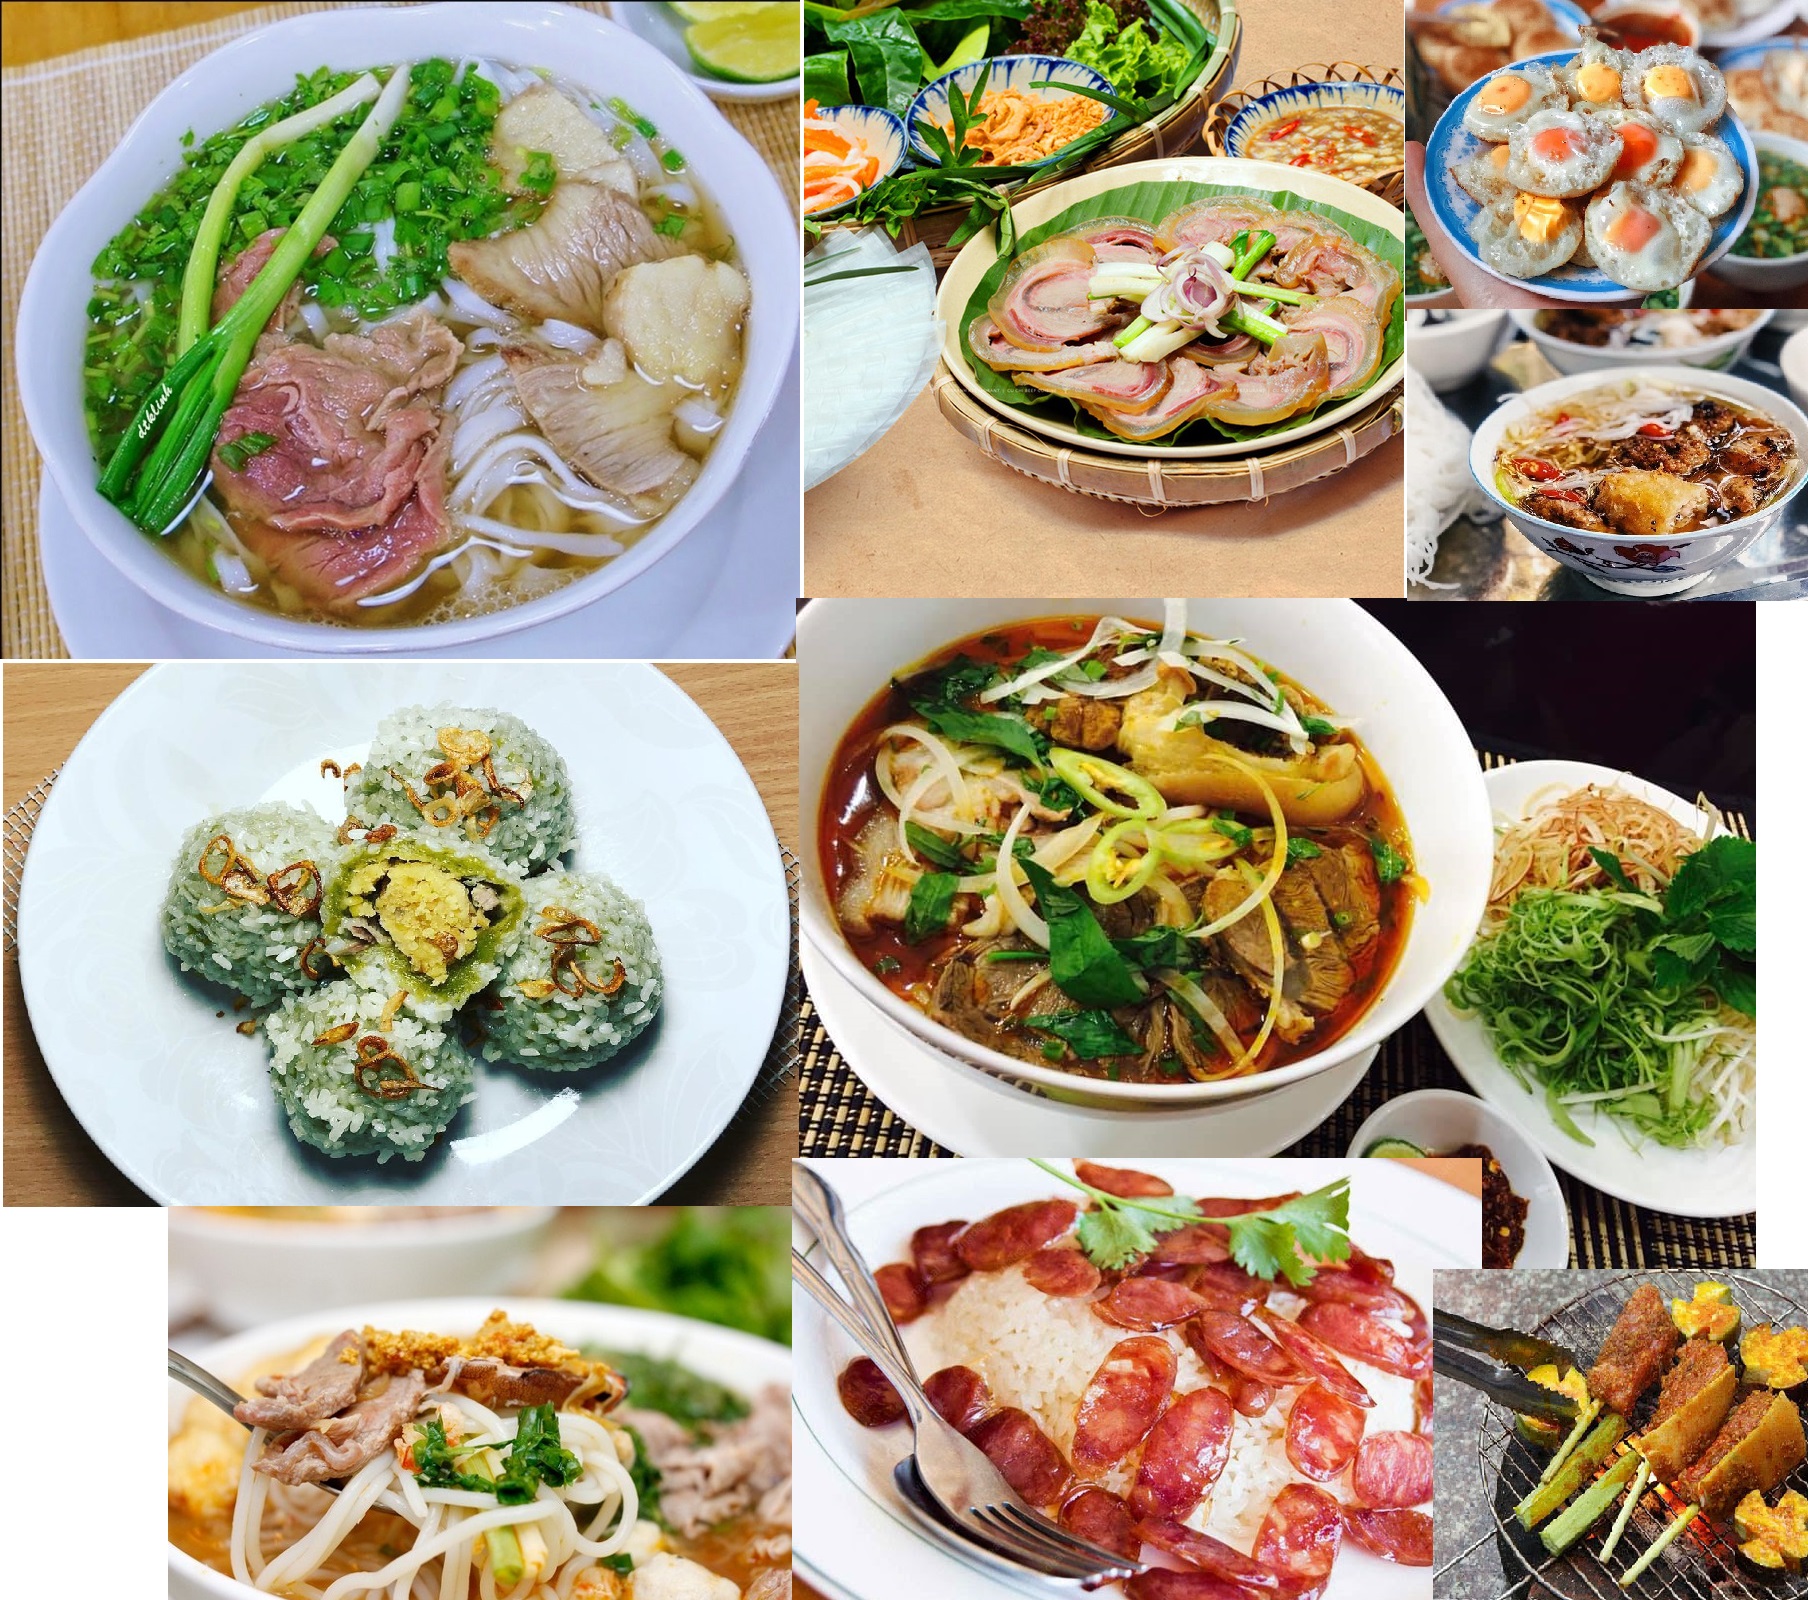 Món ăn đặc sản Việt Nam là những món ăn được chế biến từ những nguyên liệu độc đáo, có hương vị đặc trưng của Việt Nam. Với kỹ thuật nấu nướng đặc biệt, các món ăn đặc sản luôn mang đến những trải nghiệm ẩm thực tuyệt vời cho thực khách. Hãy khám phá những hình ảnh đặc sản Việt Nam và bạn sẽ không thể cưỡng lại được những trải nghiệm tuyệt vời của của ẩm thực Việt Nam.